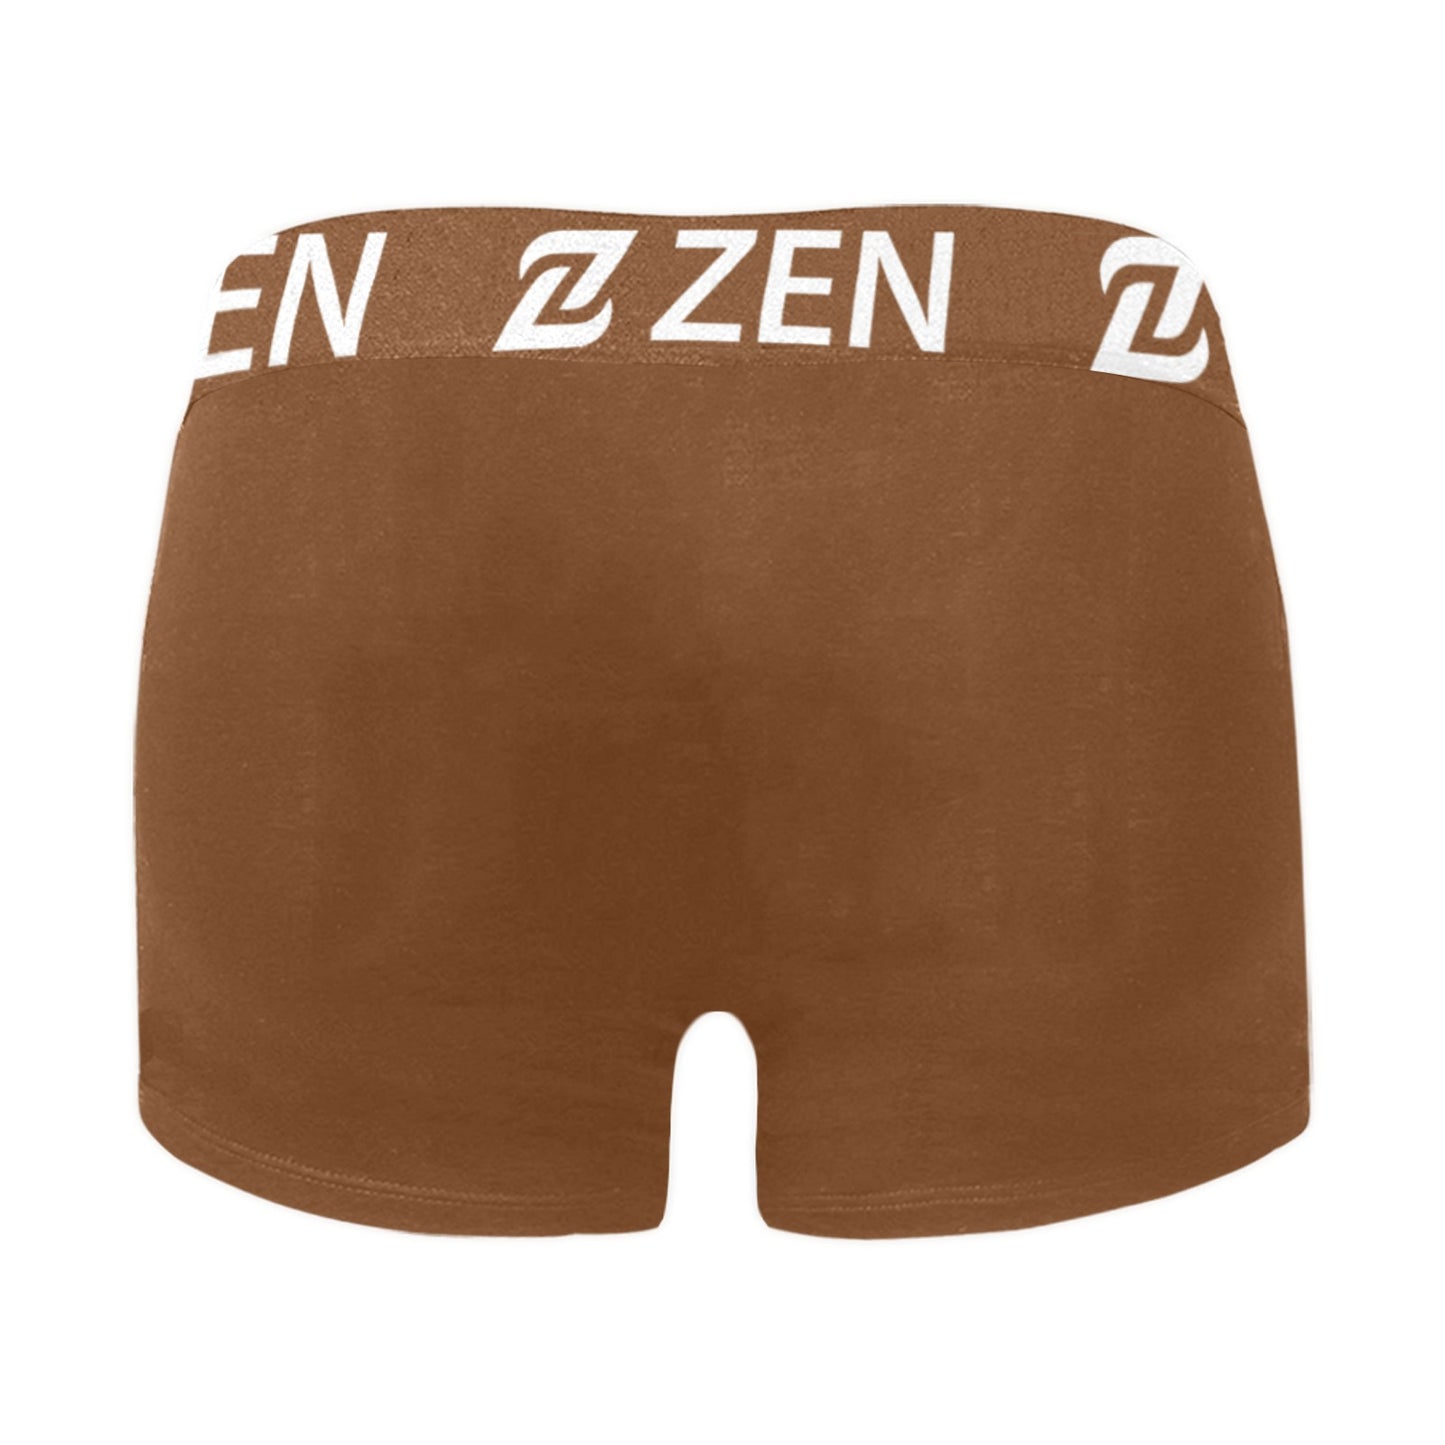 Zen Waistband - Nude Brown